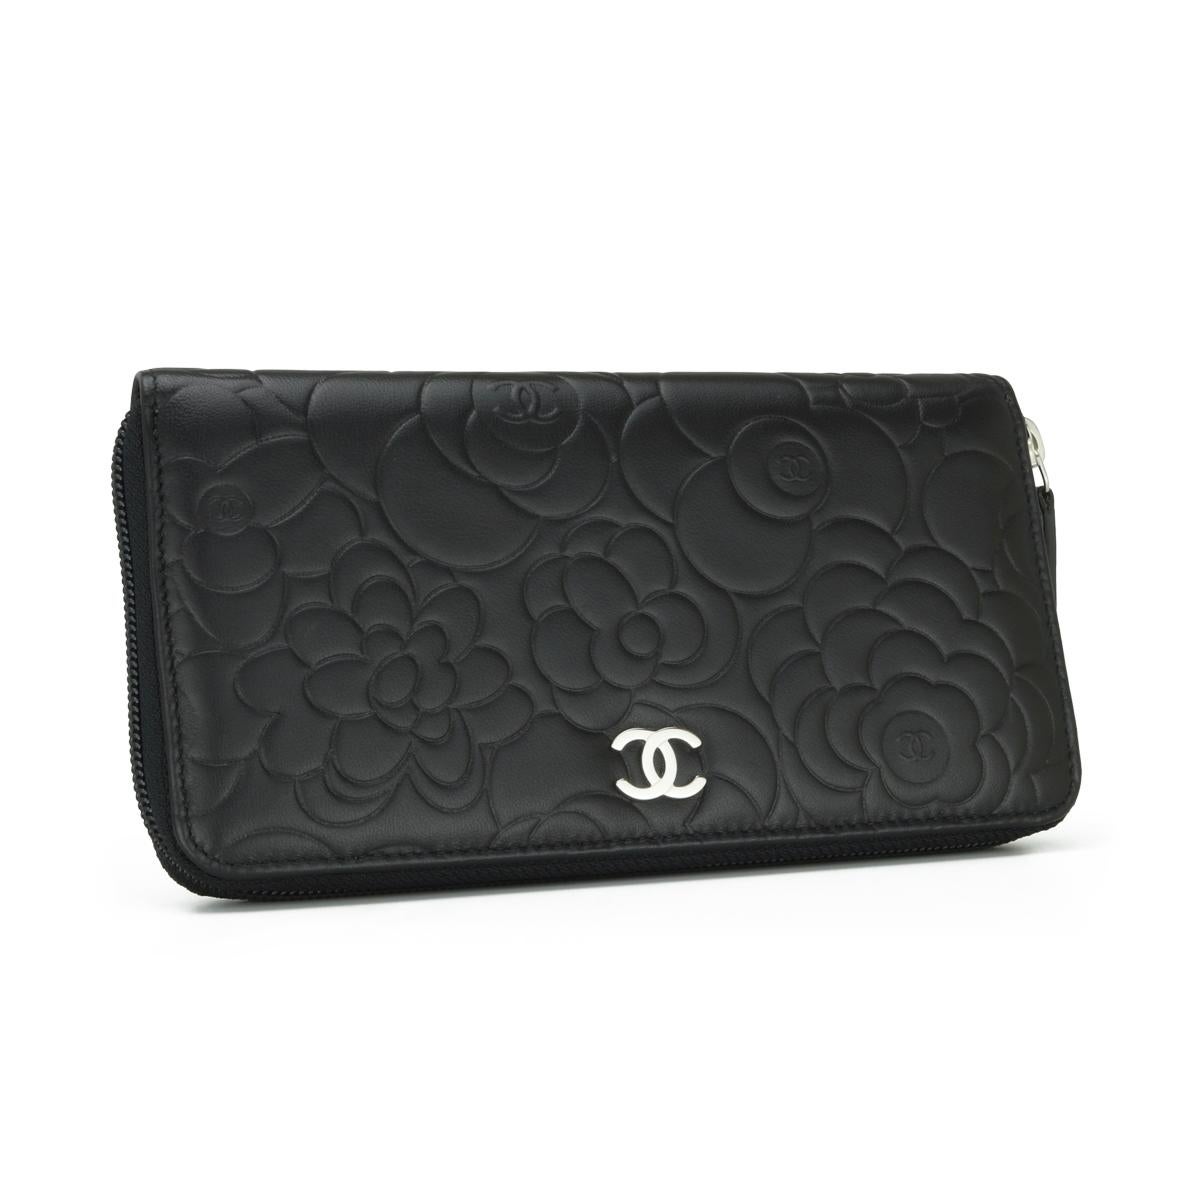 Women's or Men's Chanel Camellia Long Zipped Wallet in Black Lambskin with Silver Hardware 2013